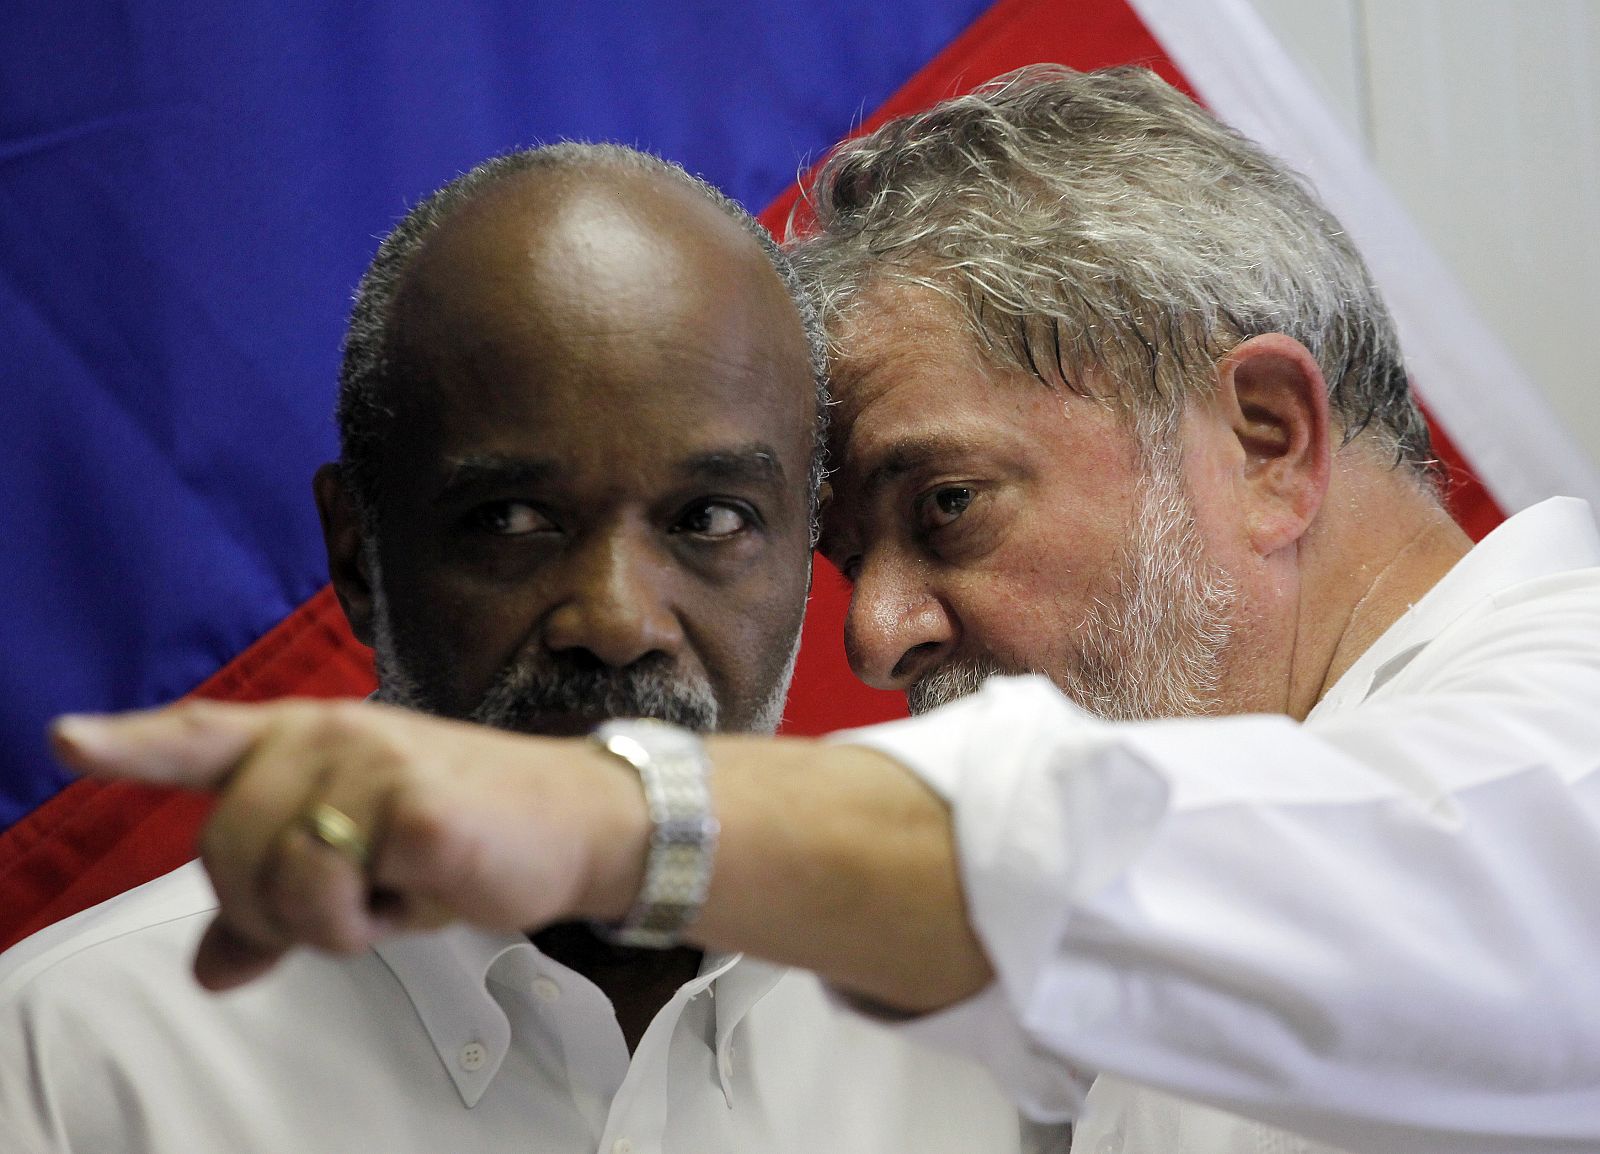 El presidente brasileño, Lula da Silva, habla con su homólogo haitiano en su visita a Puerto Príncipe.